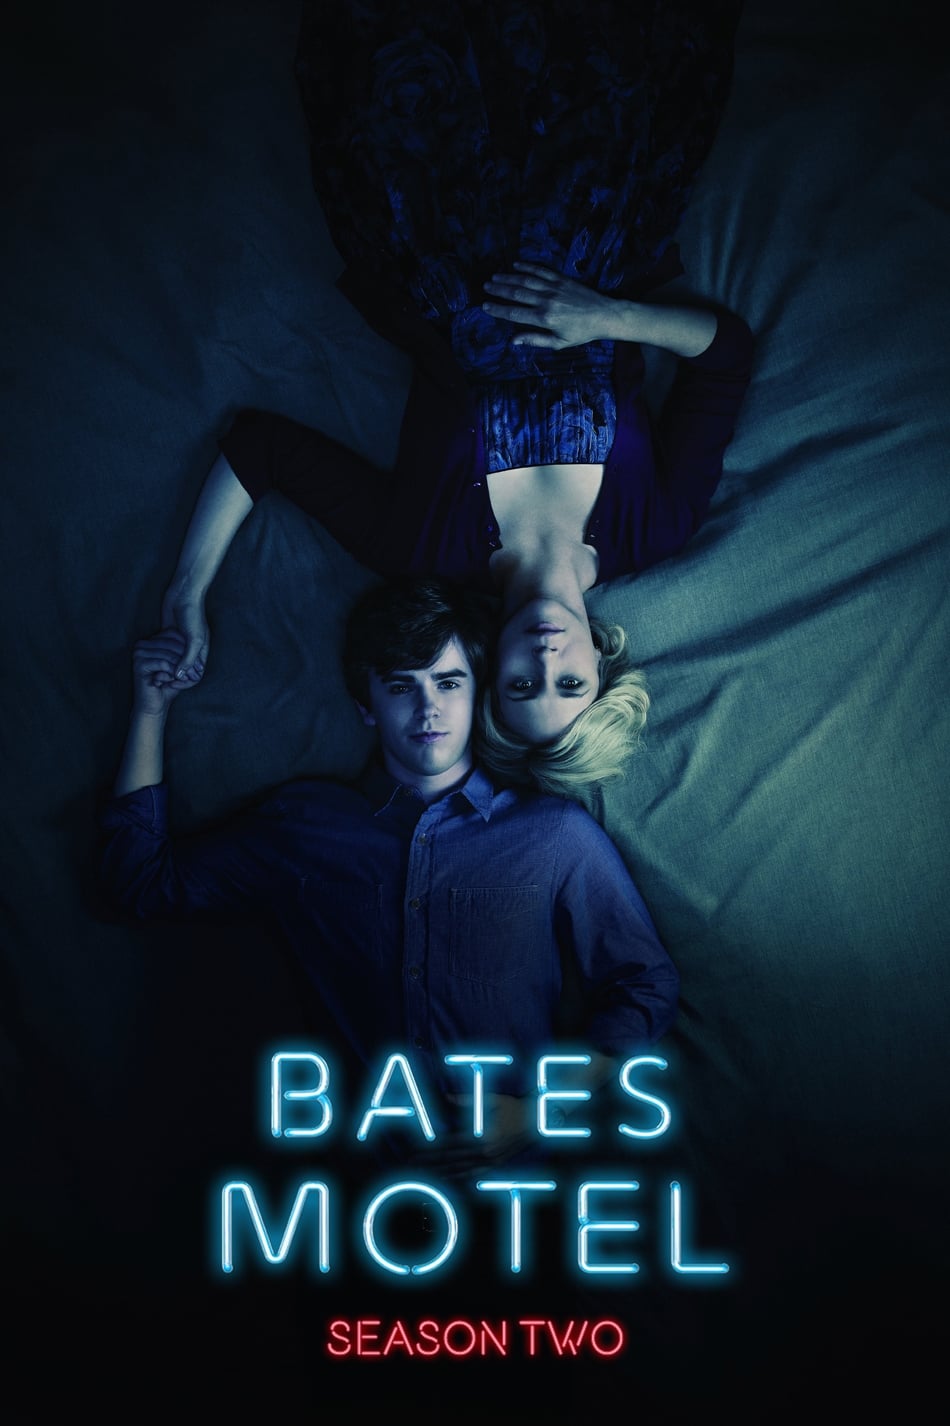 ดูหนังออนไลน์ Bates Motel (2014) Season 2 ซับไทย EP 3 เบส โมเทล ปี2 ตอนที่3 (ซับไทย)